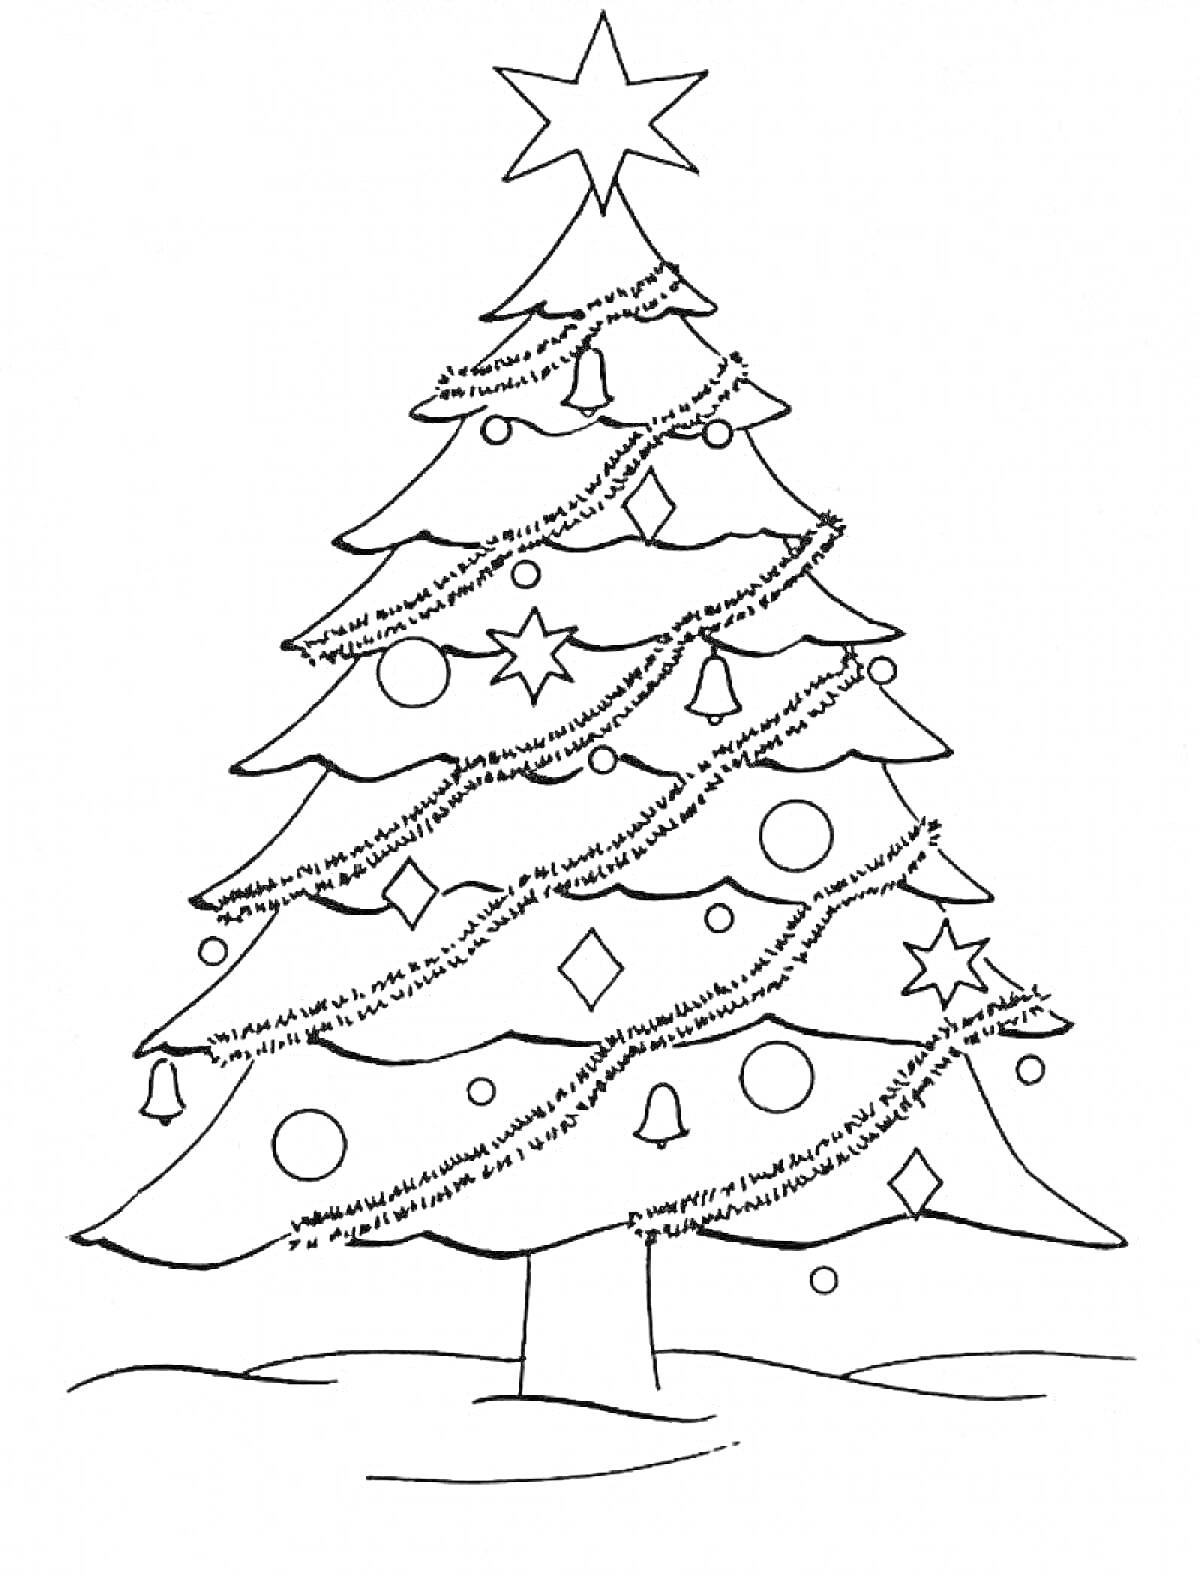 Раскраска Новогодняя елка с гирляндами, звездами, шарами, звонками и снежинками на фоне снежного покрова